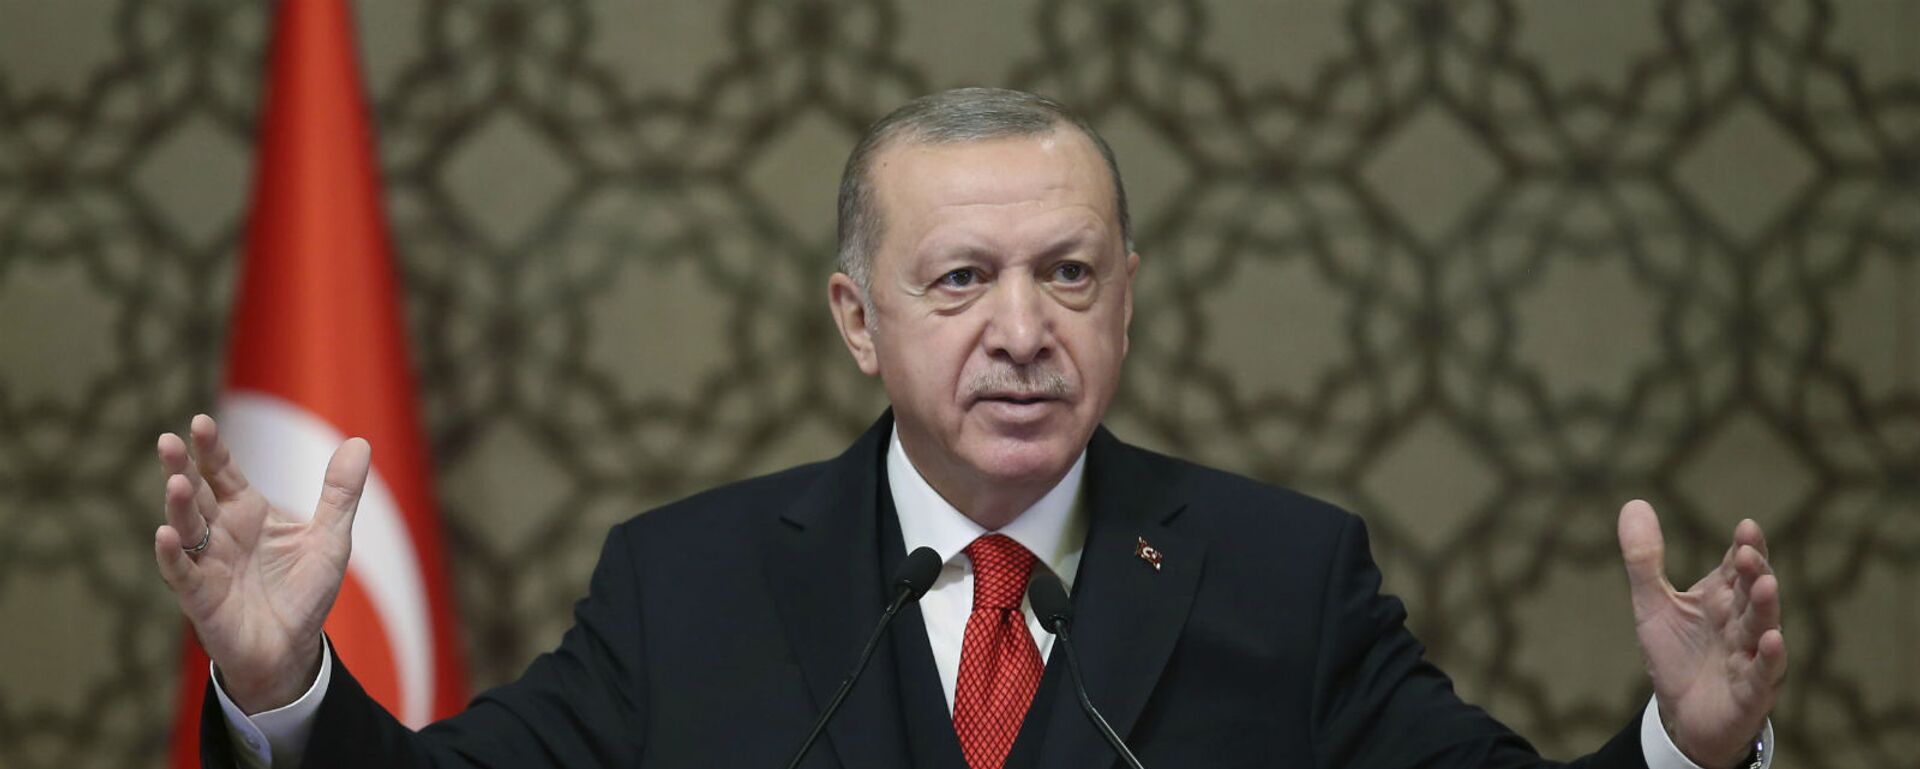 Президент Турции Реджеп Тайип Эрдоган выступает на встрече послов Турции (9 ноября 2020). Анкара - Sputnik Армения, 1920, 17.03.2021